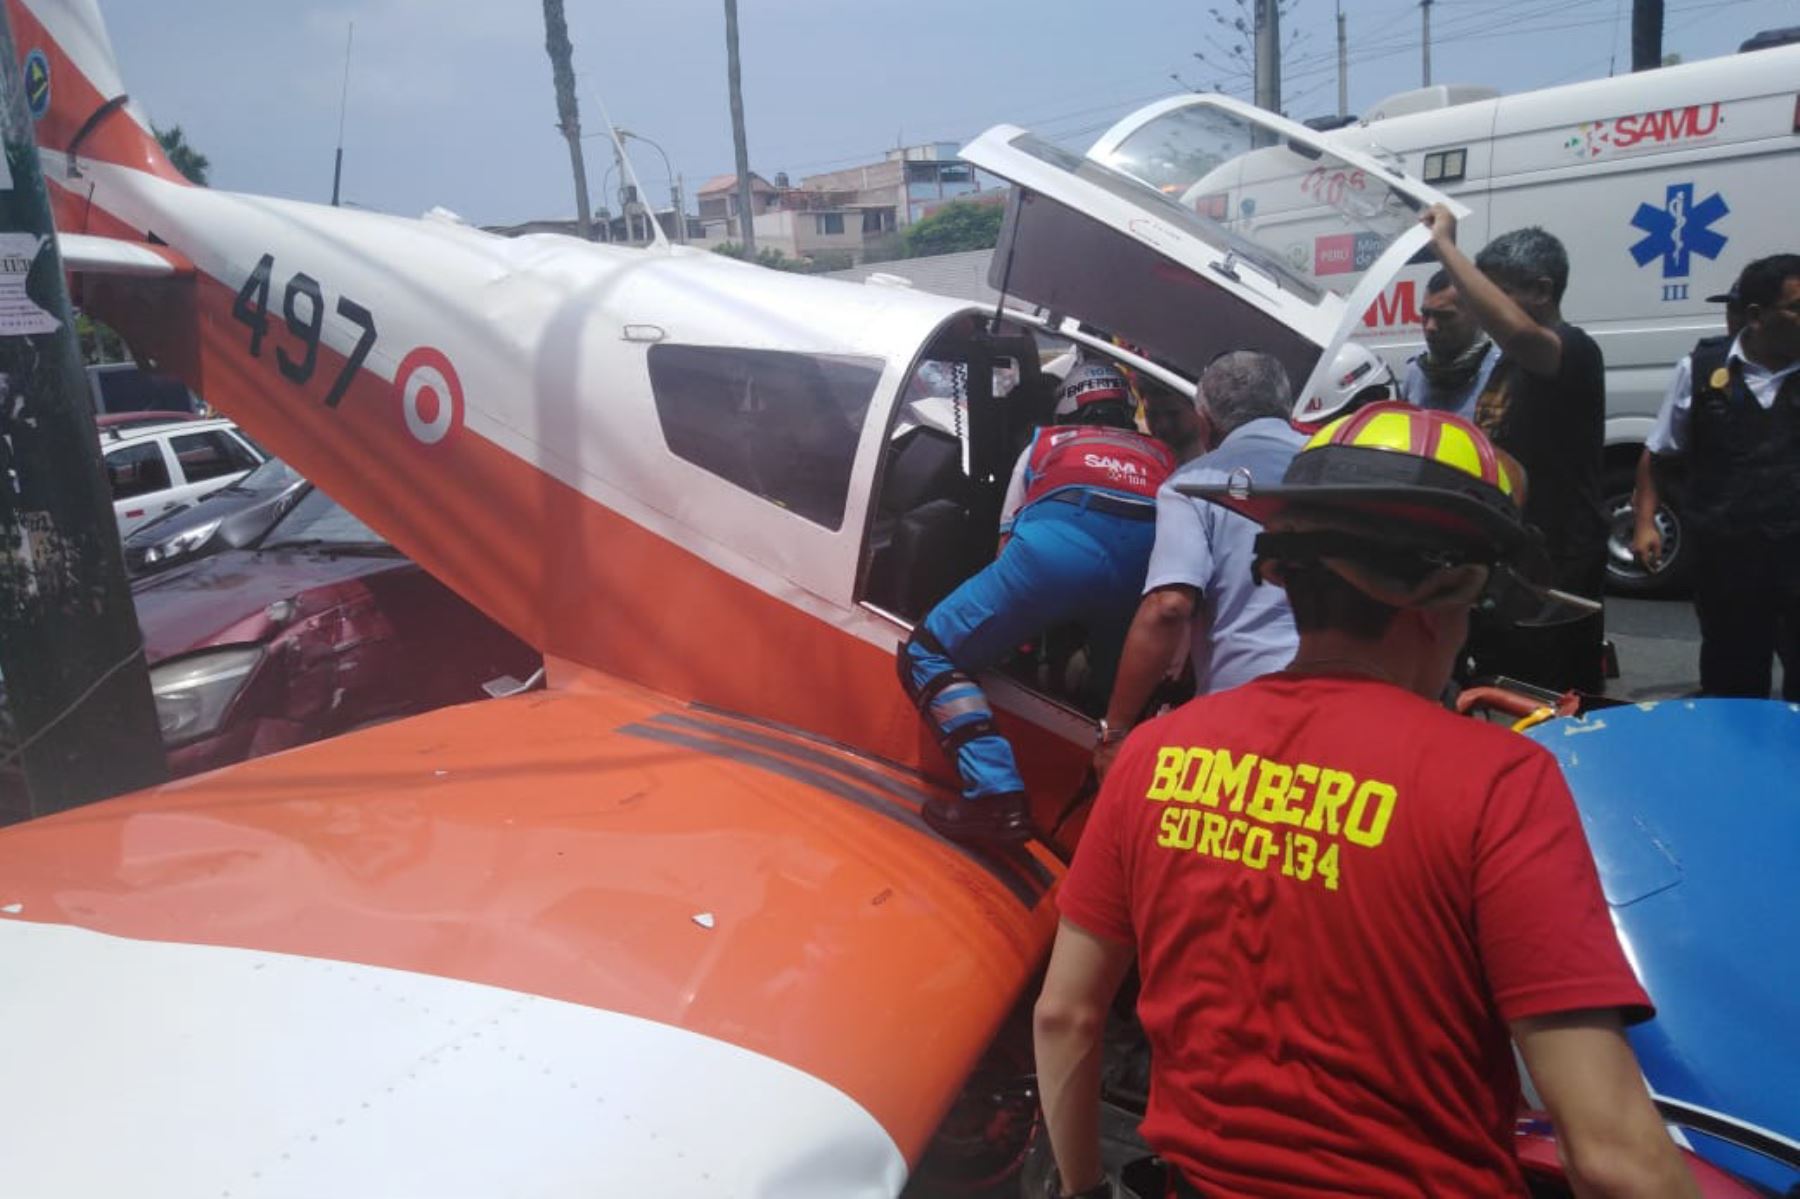 Avioneta de instrucción cae en avenida de Surco. Foto: PNP